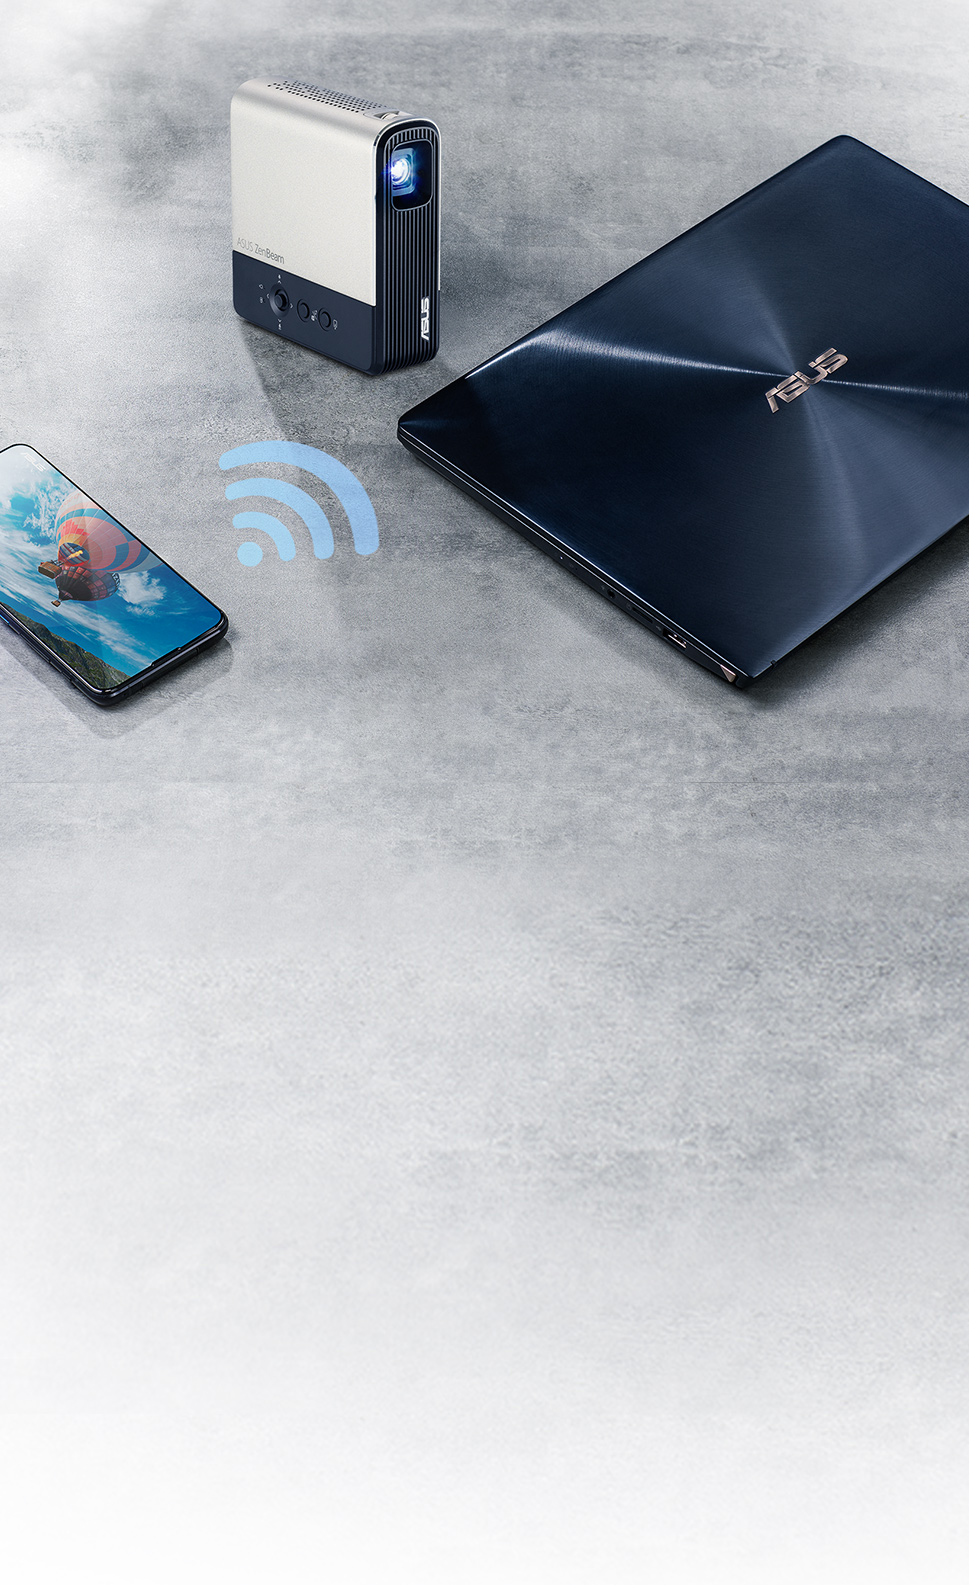 O ZenBeam E2 suporta espelhamento wireless a partir de dispositivos Android, iOS e Windows 10 ou superior, ou ligação HDMI com fios.